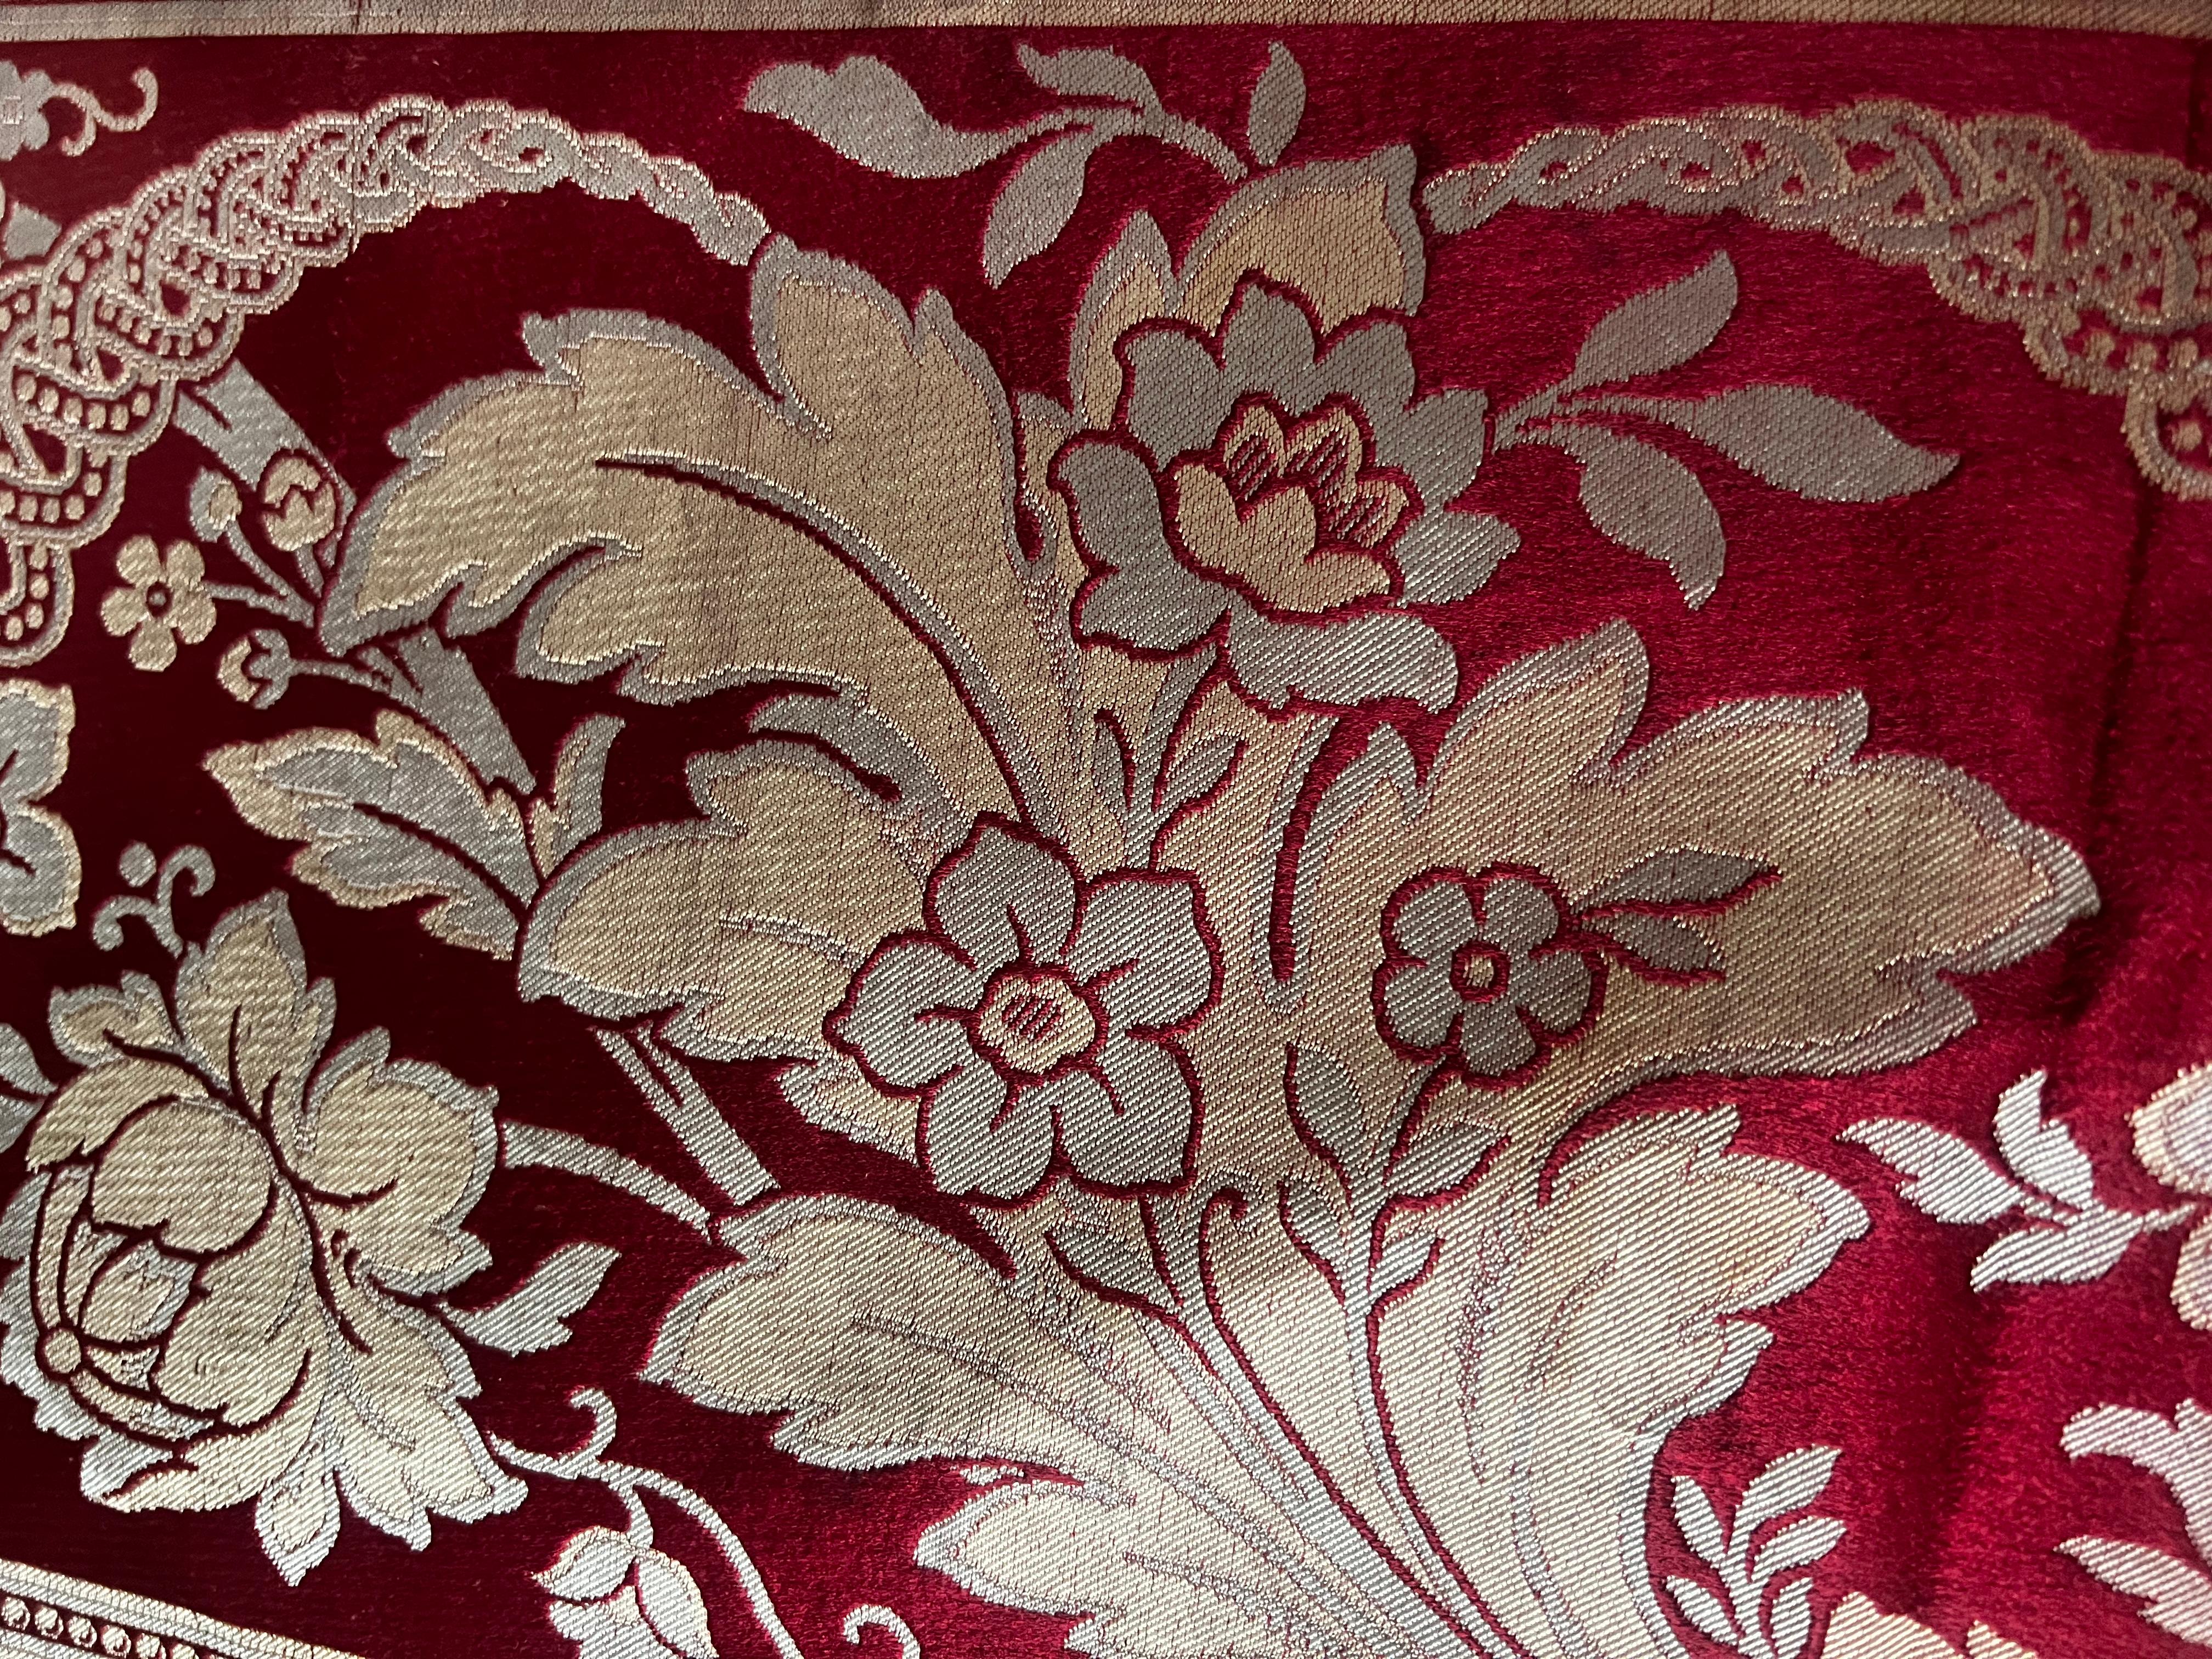 Baroque Exquisite antique 18th century Venetian 100% Silk Fabric For Sale